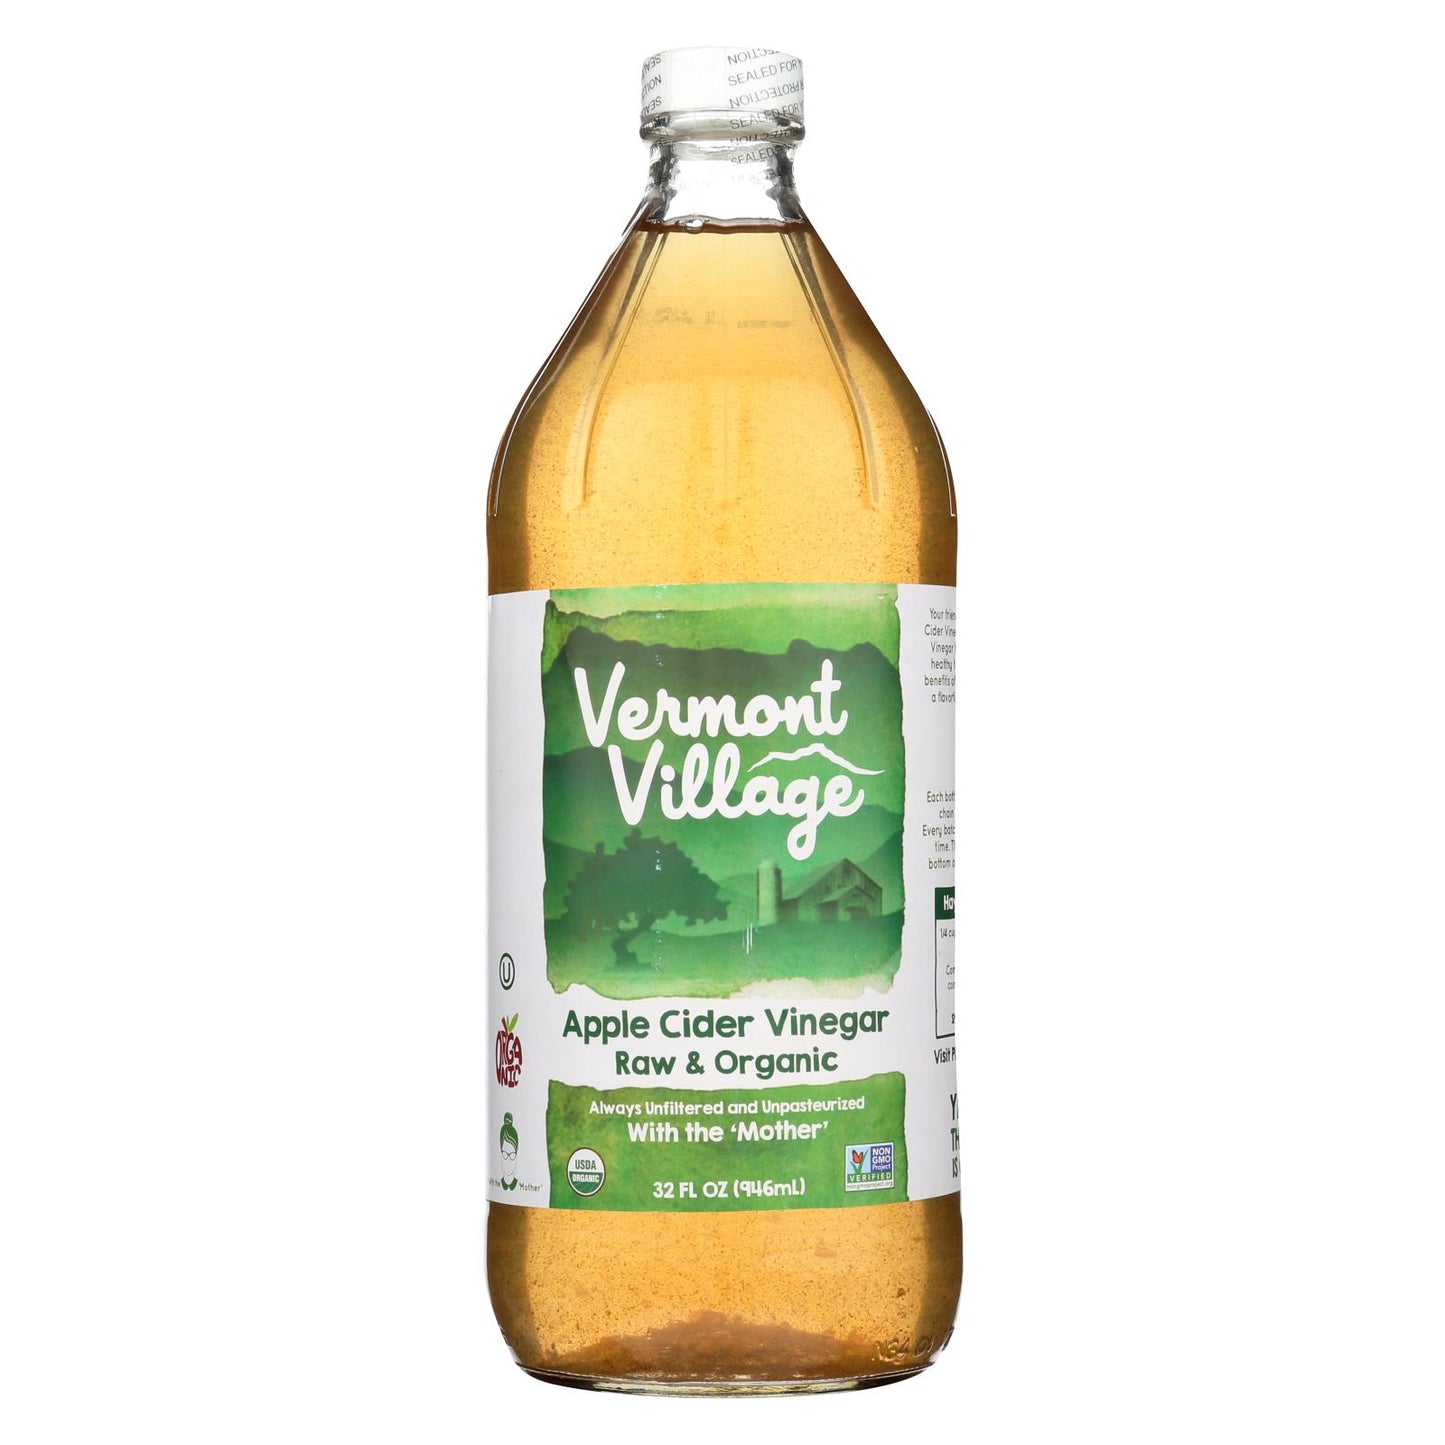 Vermont Village Organic Apple Cider Vinegar 946ml